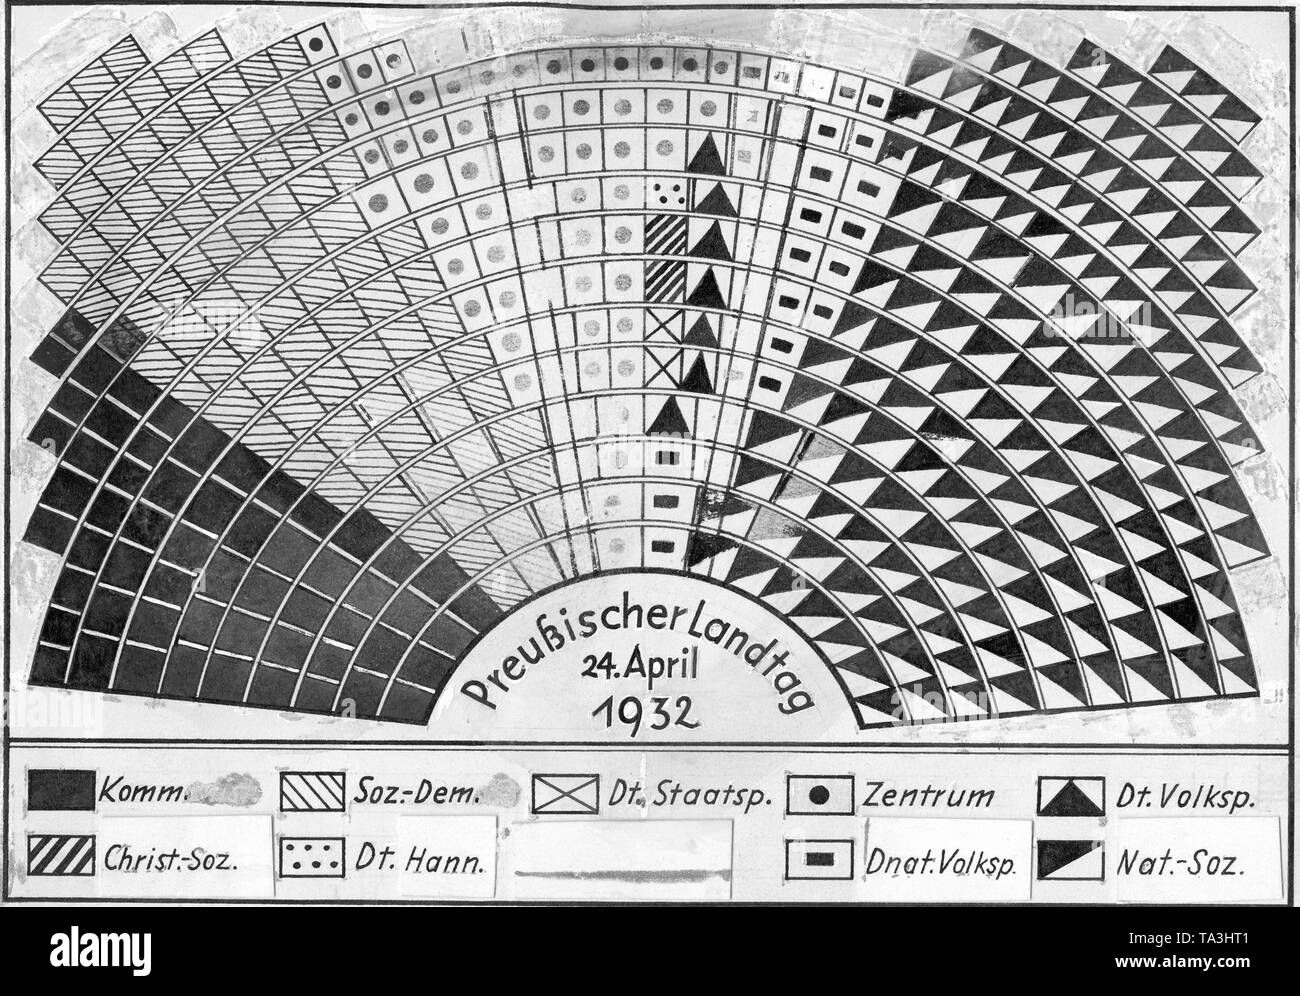 L'image montre la répartition des sièges du nouveau Landtag prussien (4e législature) après l'élection du Landtag le 24 avril 1932. Ici sont présentés les sièges du KPD, le SPD allemand, l'État partie (la bufférisation dstp), le Parti du centre, DVP, le Service social chrétien, le German-Hanoverian CSVD) Partie (DHP), et DNVP NSDAP. Banque D'Images